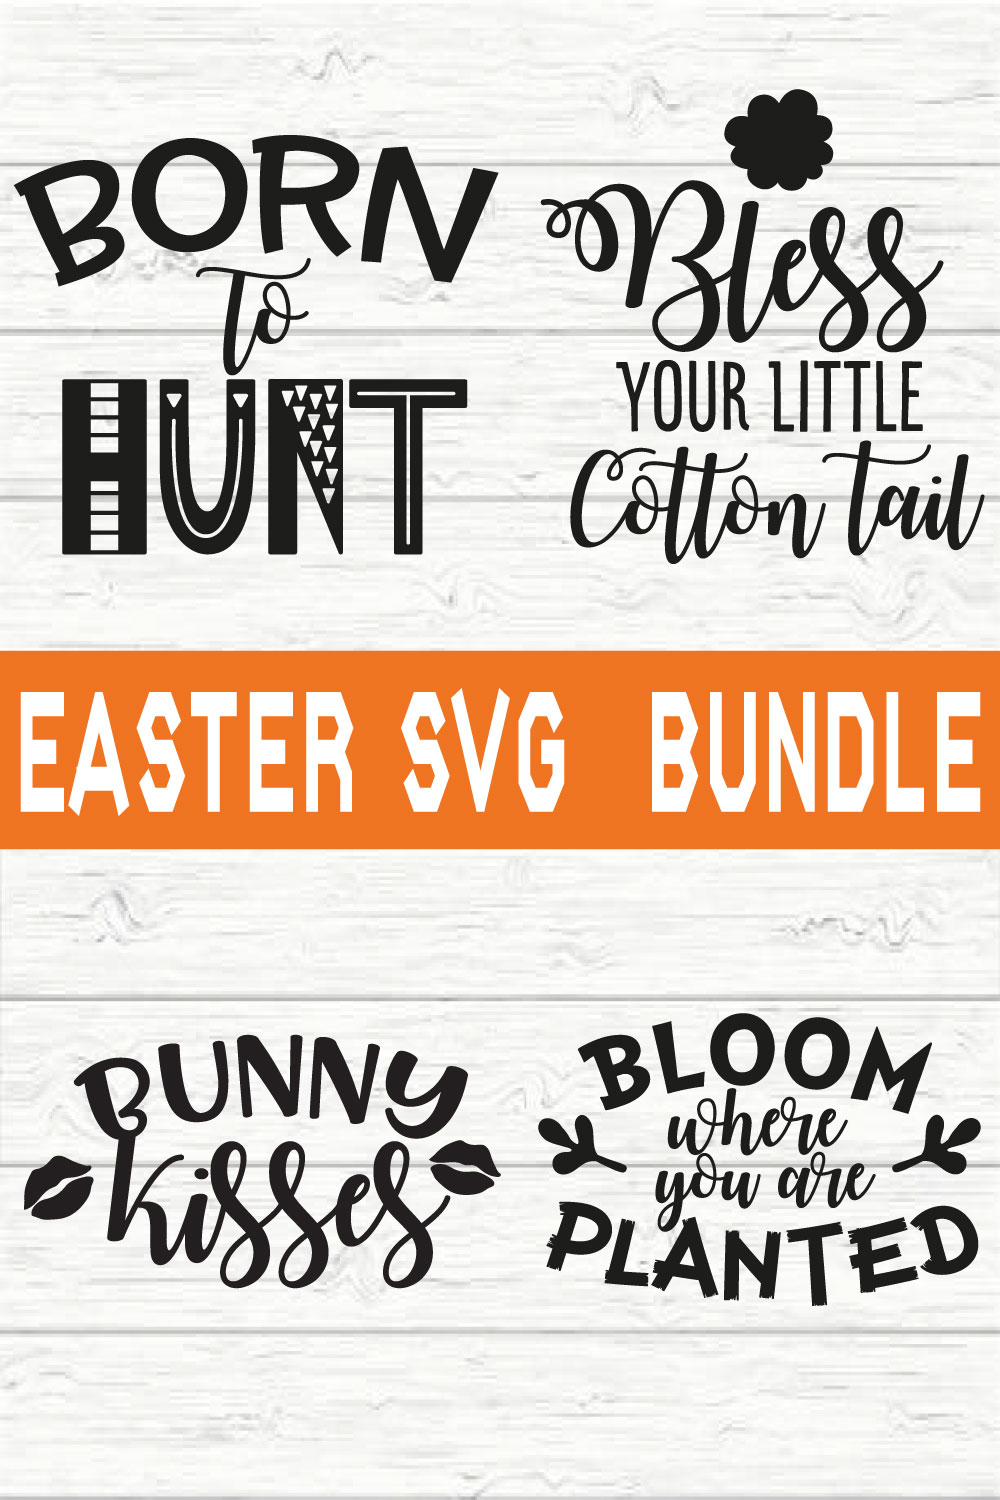 Easter Svg Bundle vol 2 pinterest preview image.